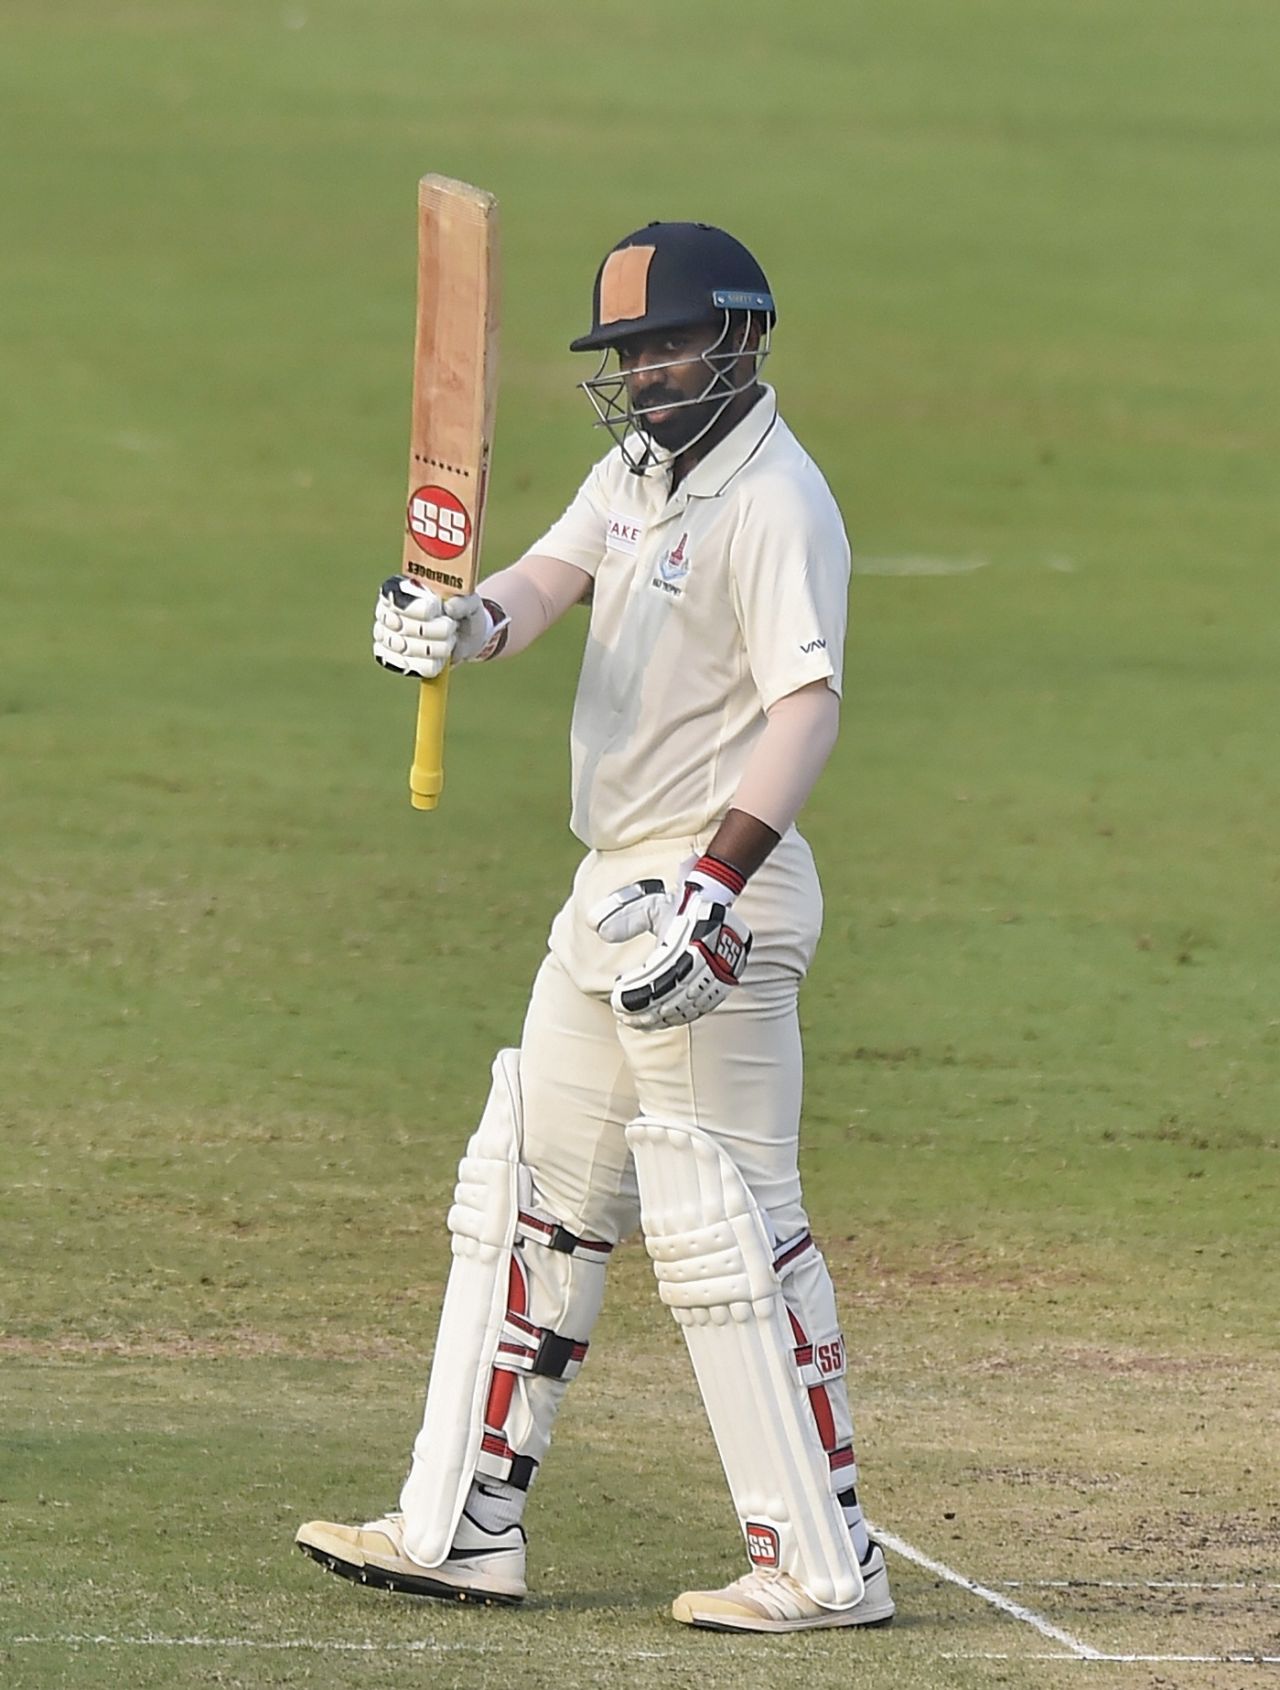 Abhinav Mukund raises his bat after reaching a fifty, Tamil Nadu v Mumbai, Ranji Trophy 2019-20, Chennai, January 12, 2020